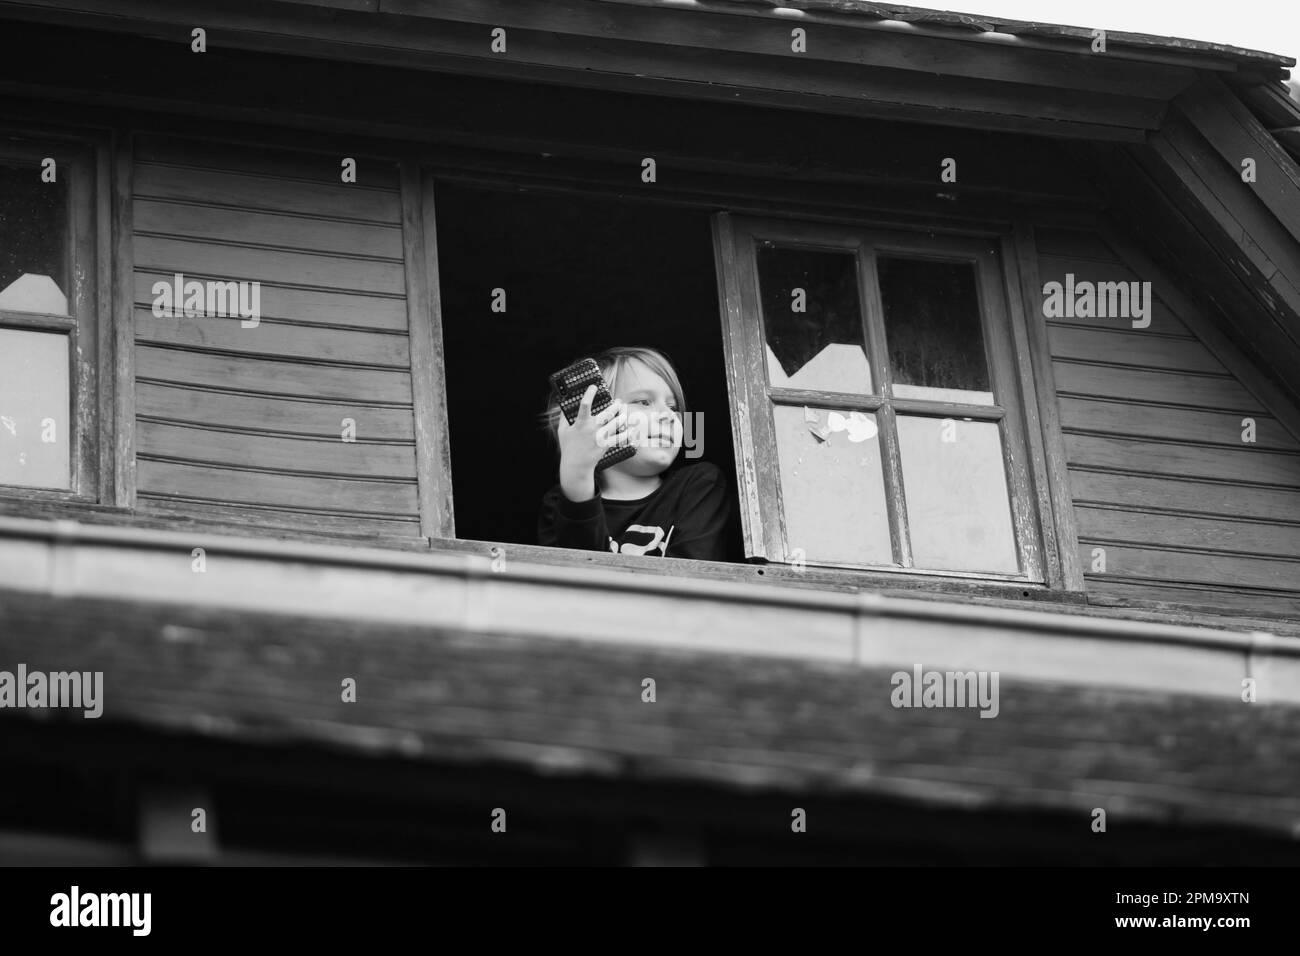 Un niño mira por la ventana de una casa de madera. Imagen en blanco y negro. Arresto domiciliario, descanso en el pueblo. Foto de stock